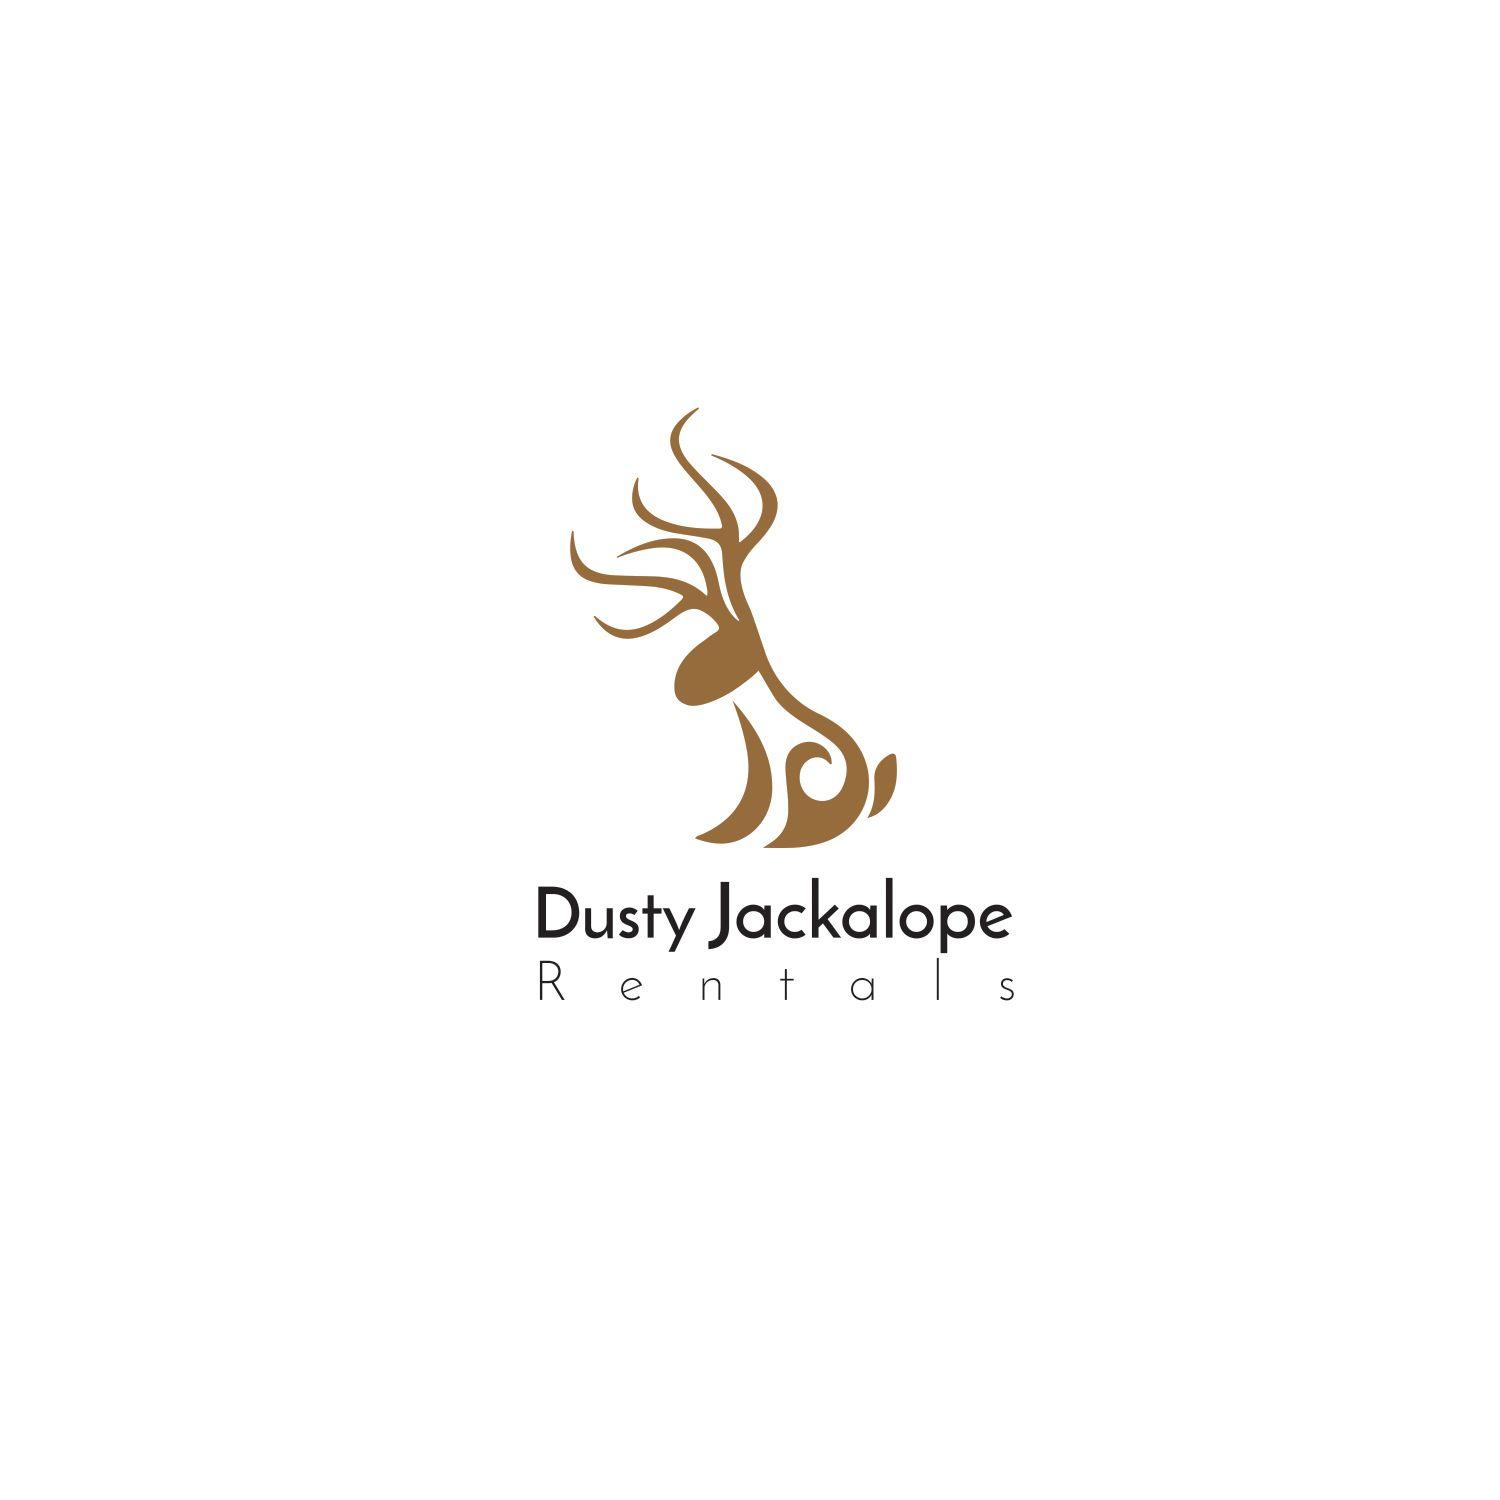 Jackalope Logo - Playful, Modern, It Company Logo Design for Dusty Jackalope Rentals